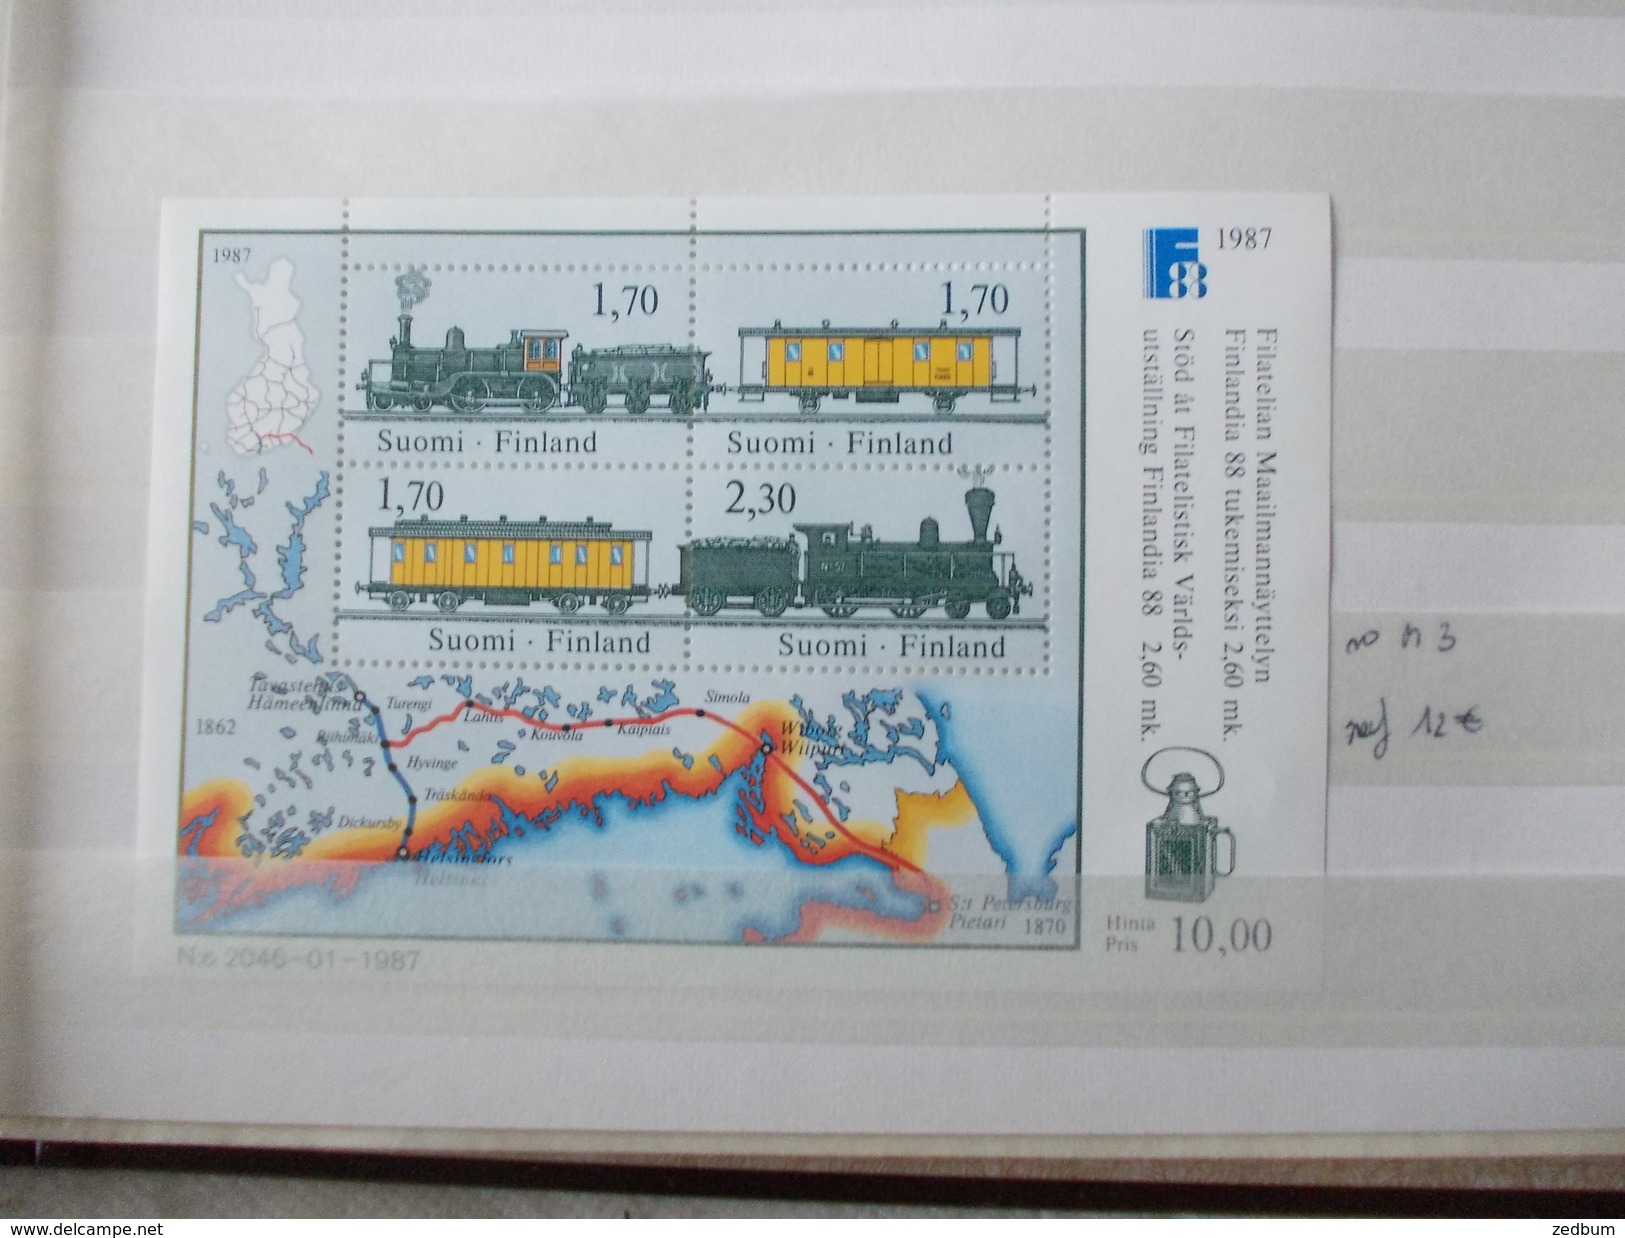 ALBUM 4 collection de timbres avec pour thème le chemin de fer train de tout pays valeur 547.25 &euro;